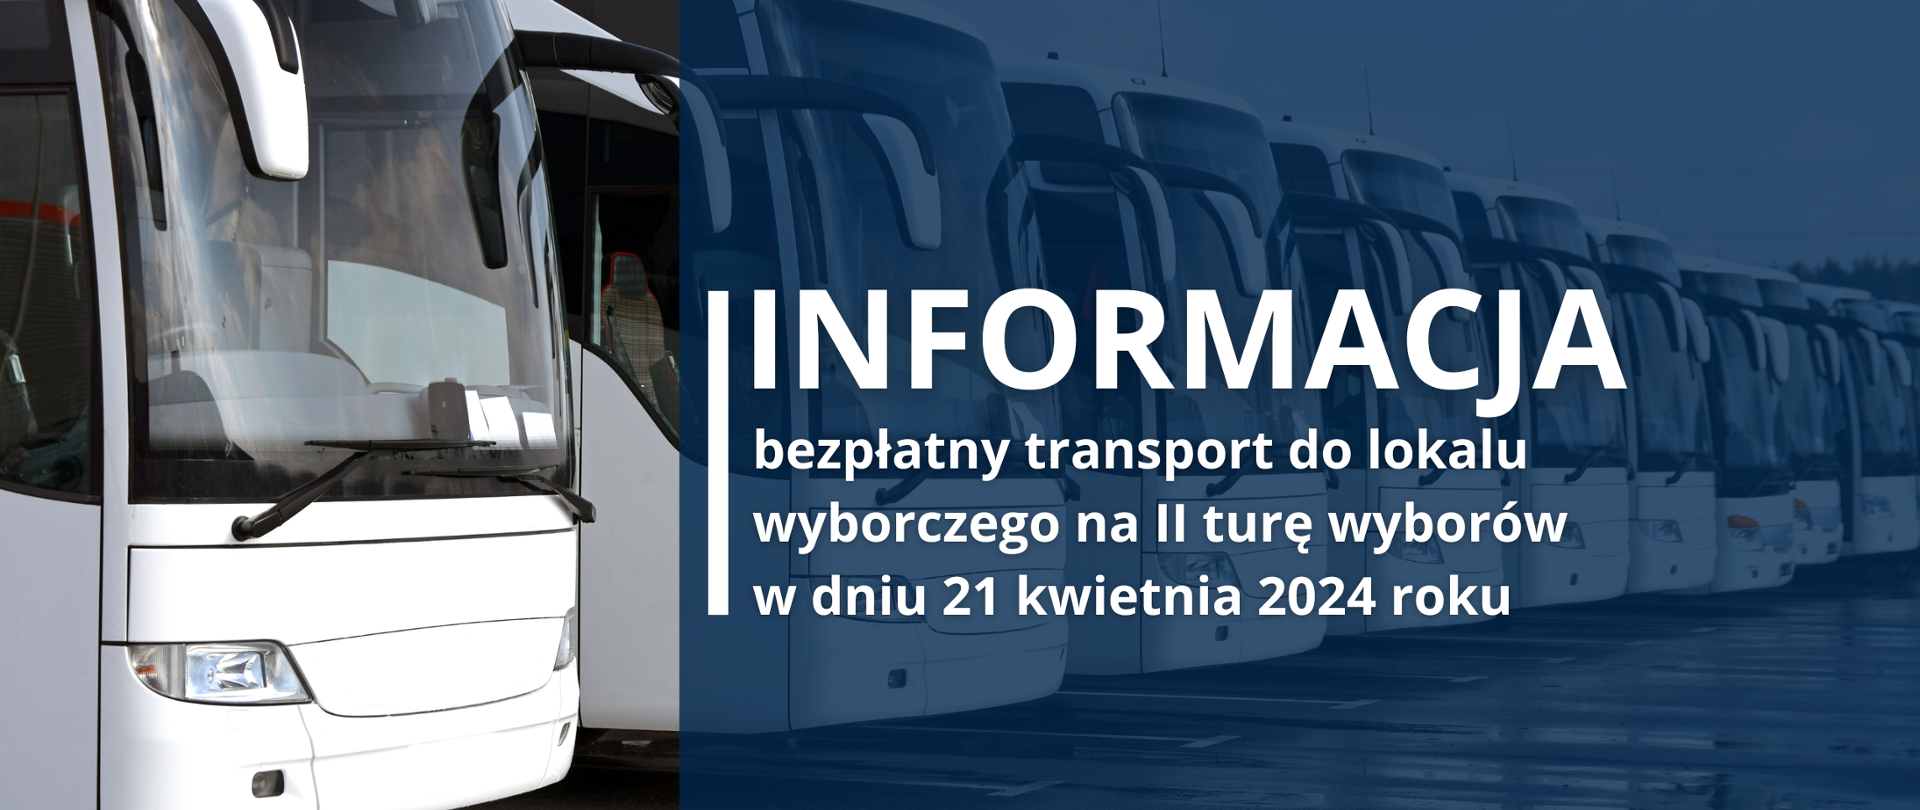 W tle białe autobusy ustawione obok siebie, na pierwszym planie granatowy kwadrat i tekst: "INFORMACJA bezpłatny transport do lokalu wyborczego na II turę wyborów w dniu 21 kwietnia 2024 roku"